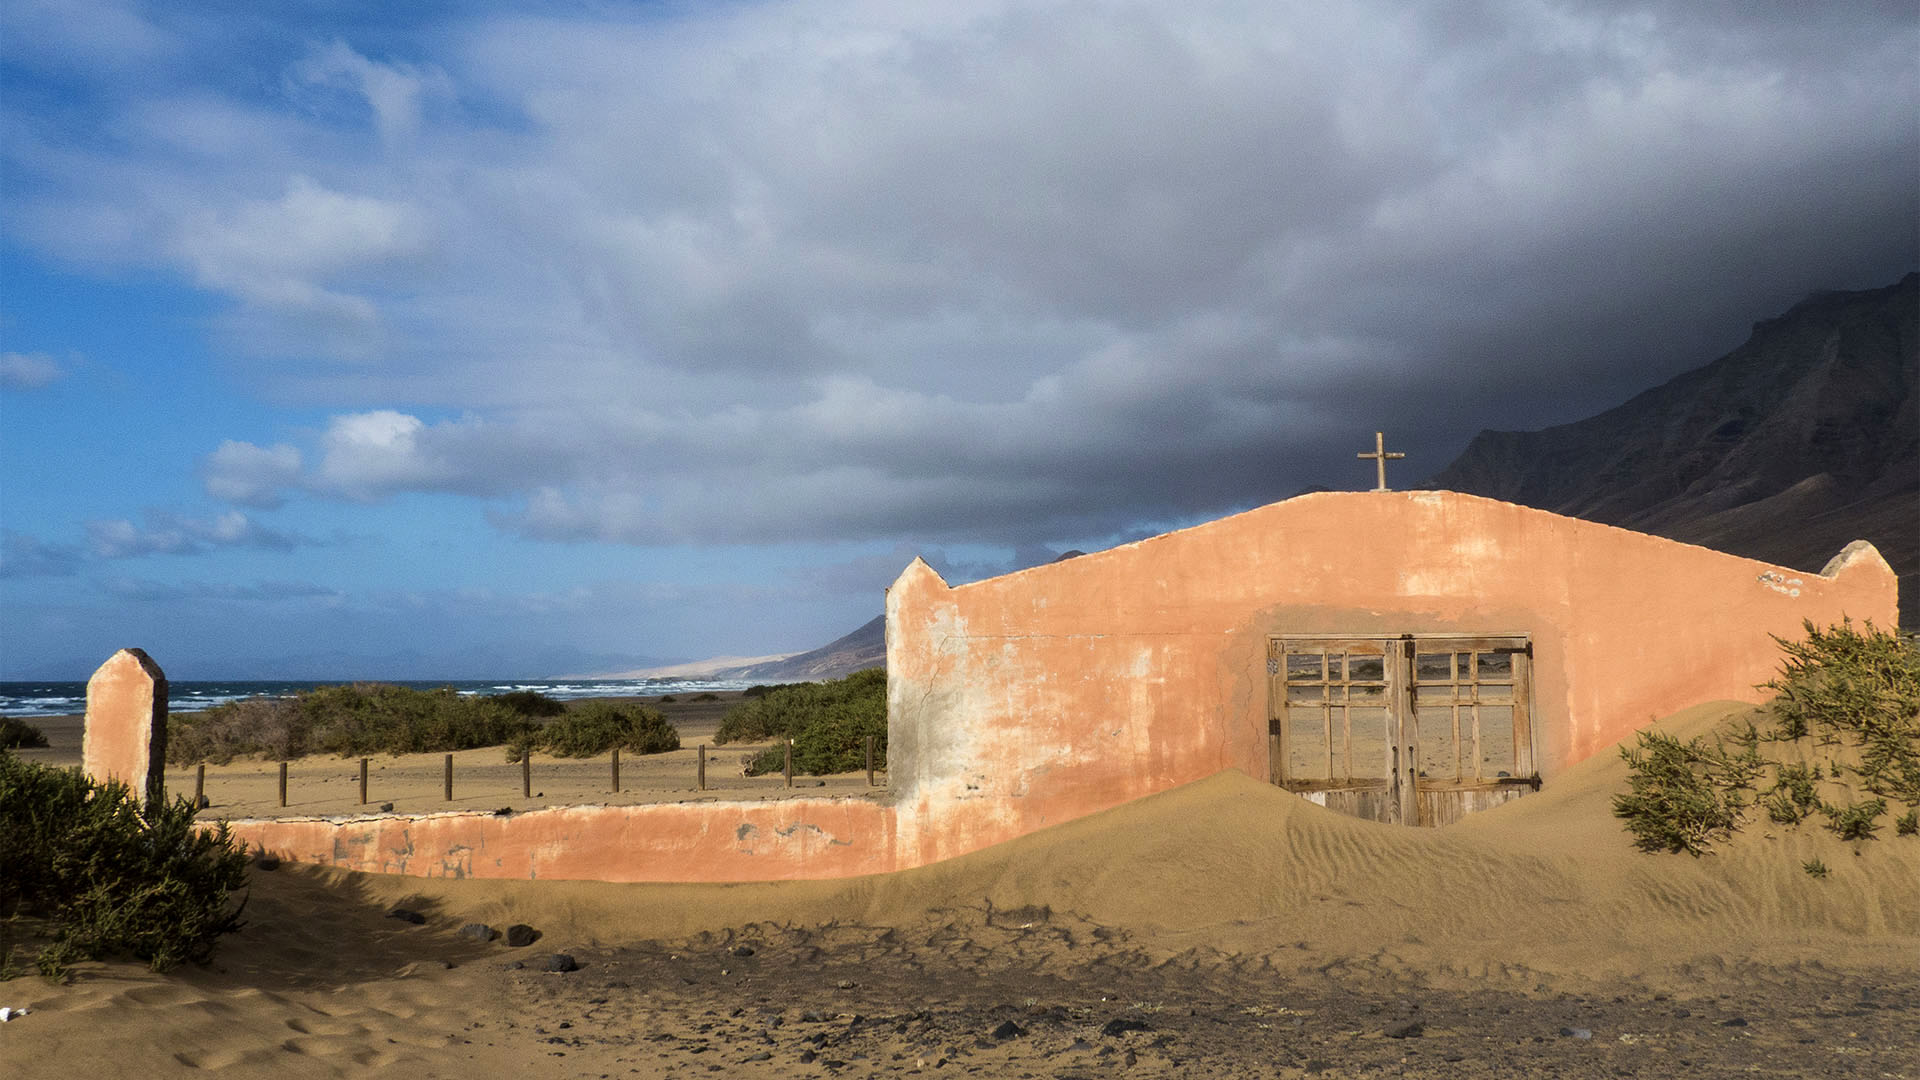 Wandern + Trekking auf Fuerteventura: Der Königsweg – durch das Gran Valle nach Cofete.